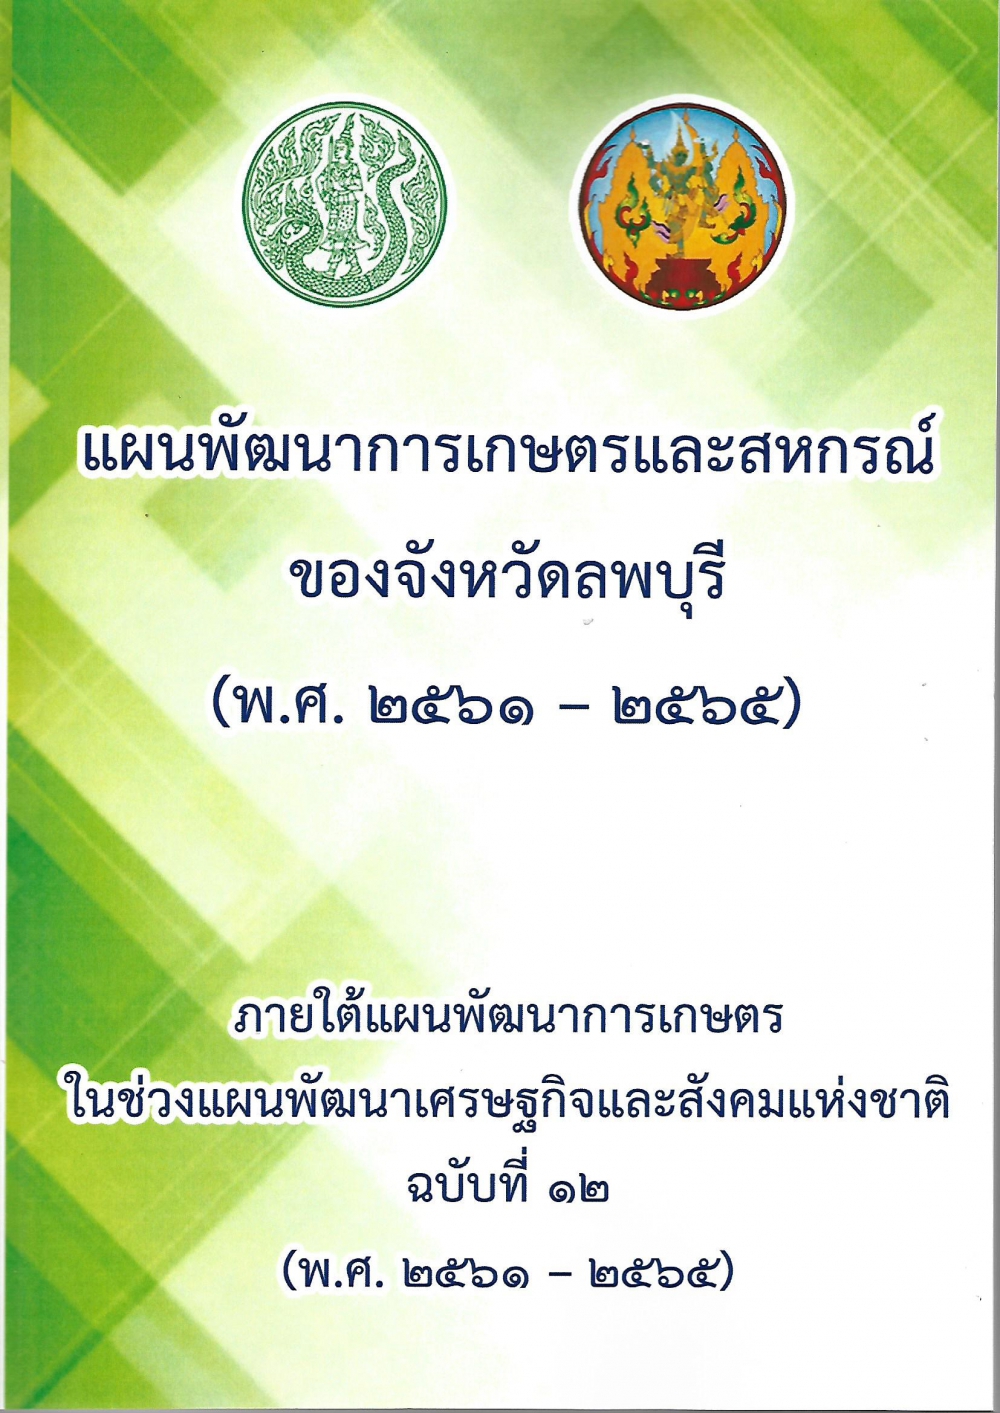 แผนพัฒนาการเกษตรและสหกรณ์ของจังหวัดลพบุรี (พ.ศ. 2561-2565)